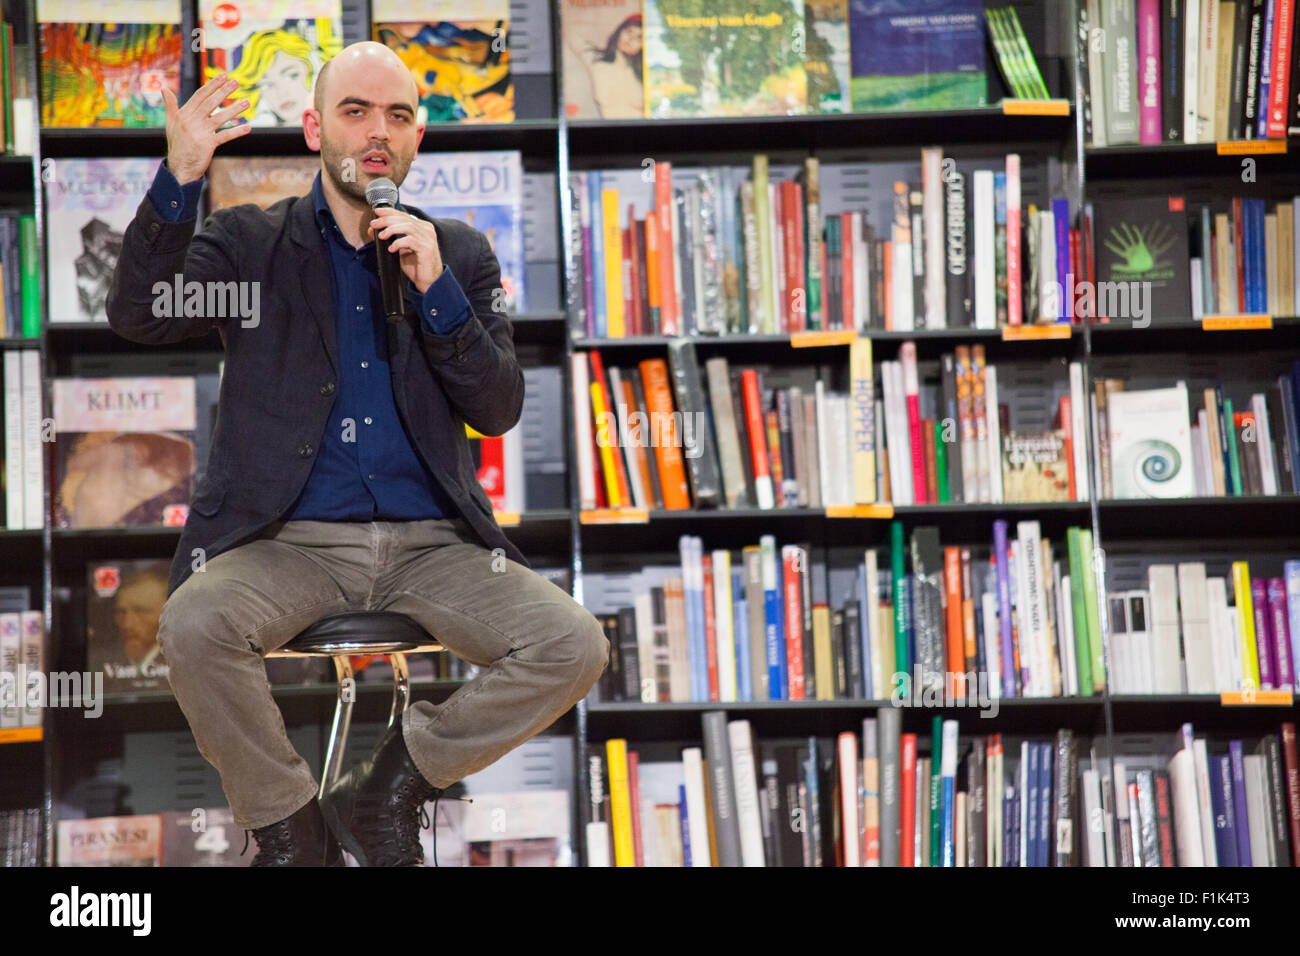 Roma, Italia, 15 Mar 2011. Roberto Saviano, scrittore e autore di diversi libri, pranzi il suo libro "Vieni via con me" presso la Libreria Feltrinelli. Foto Stock